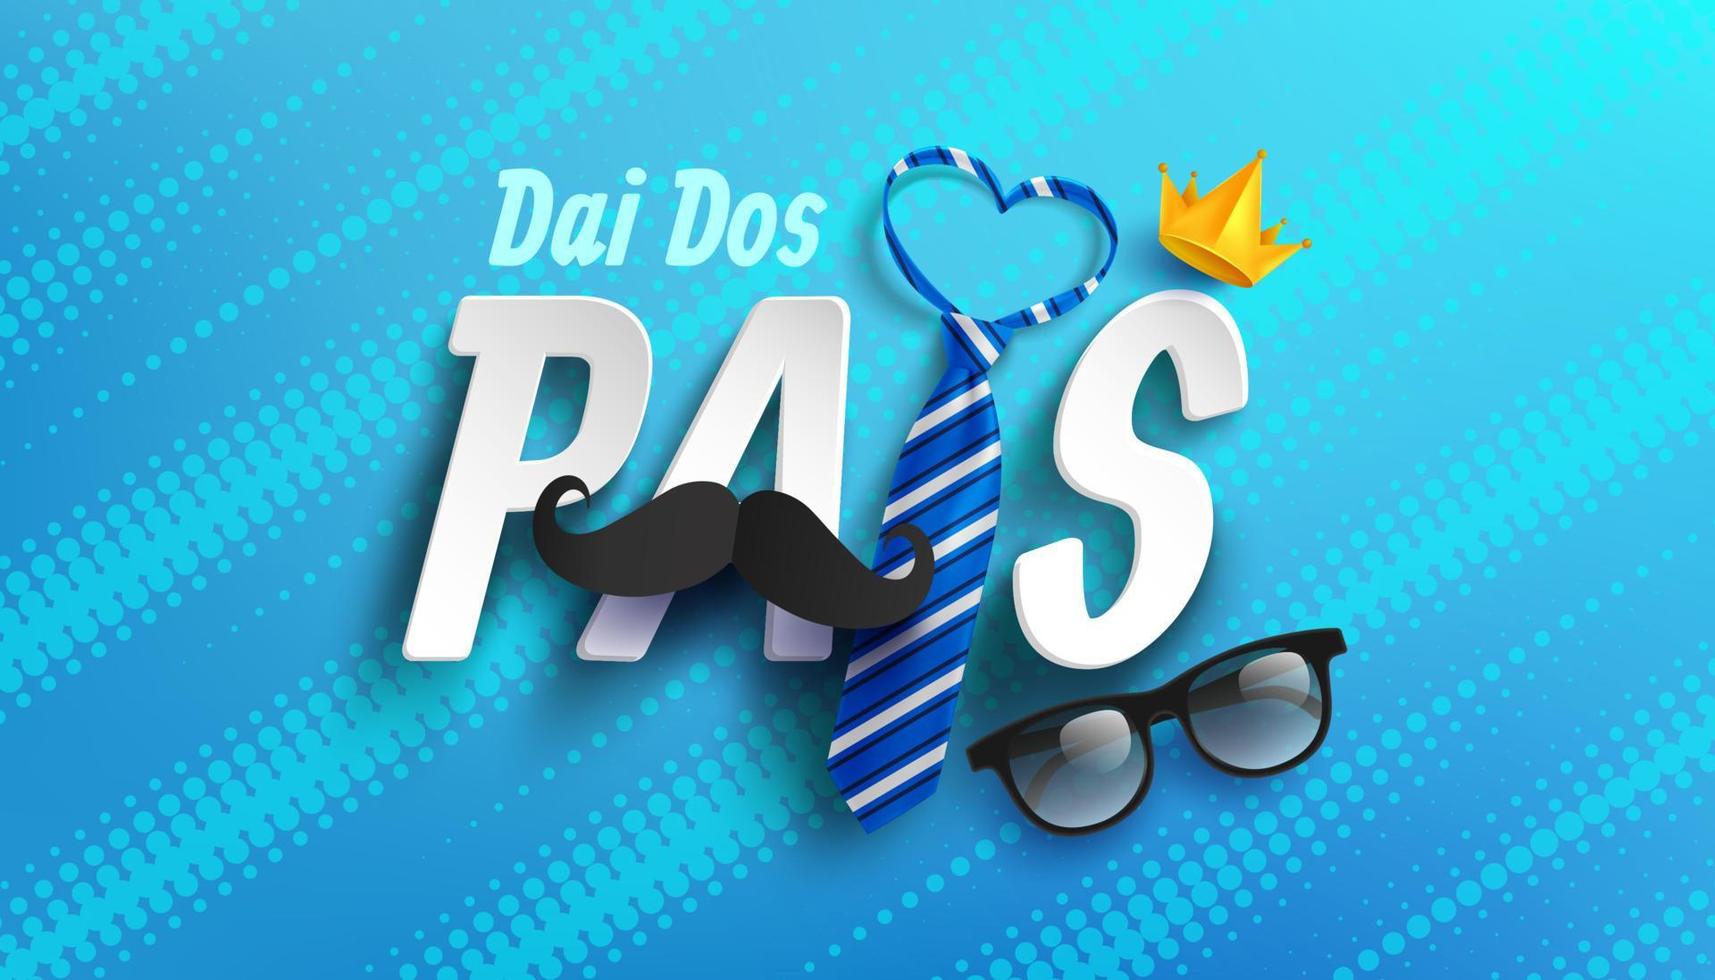 gelukkige vaderdagkaart in Portugese woorden met stropdas en bril voor papa op blue.promotion en winkelen sjabloon voor vaders day.vector illustratie eps10 vector